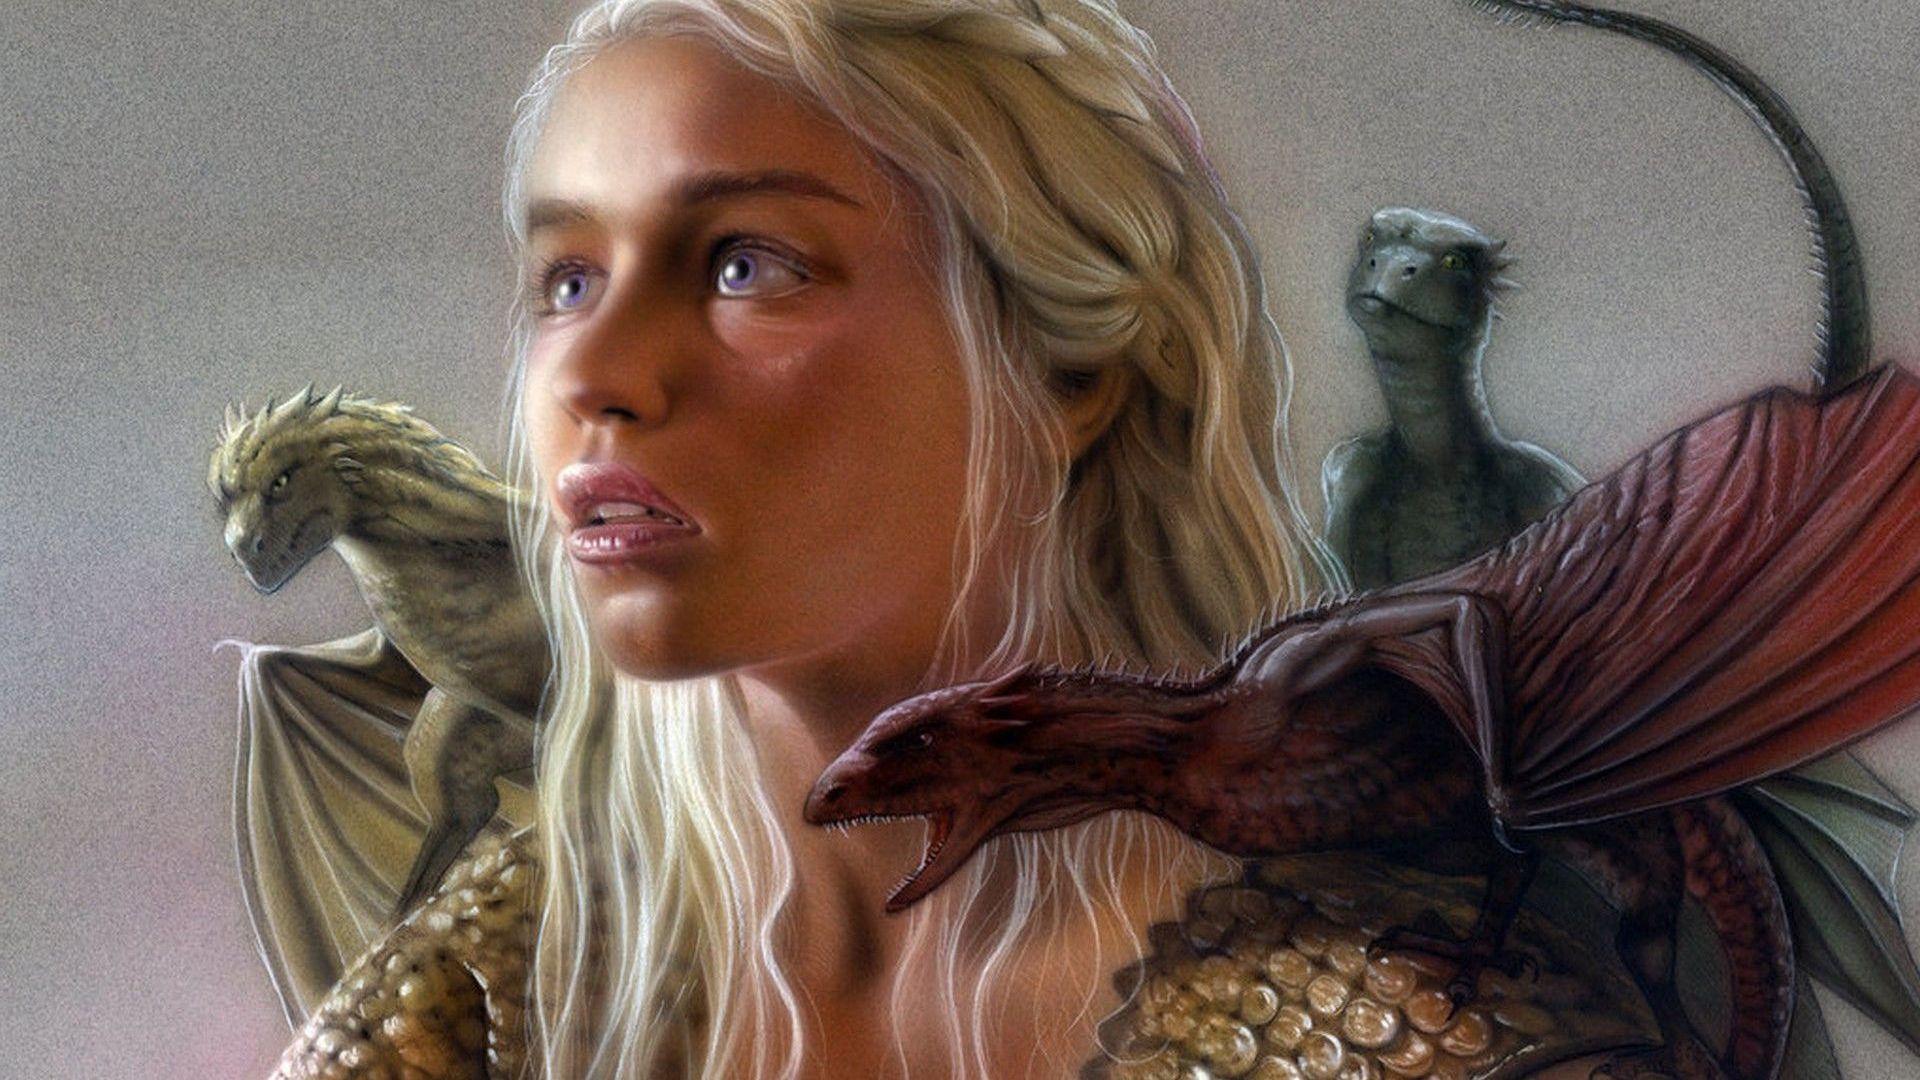 Group of Daenerys Targaryen Dragons Wallpaper 1080P